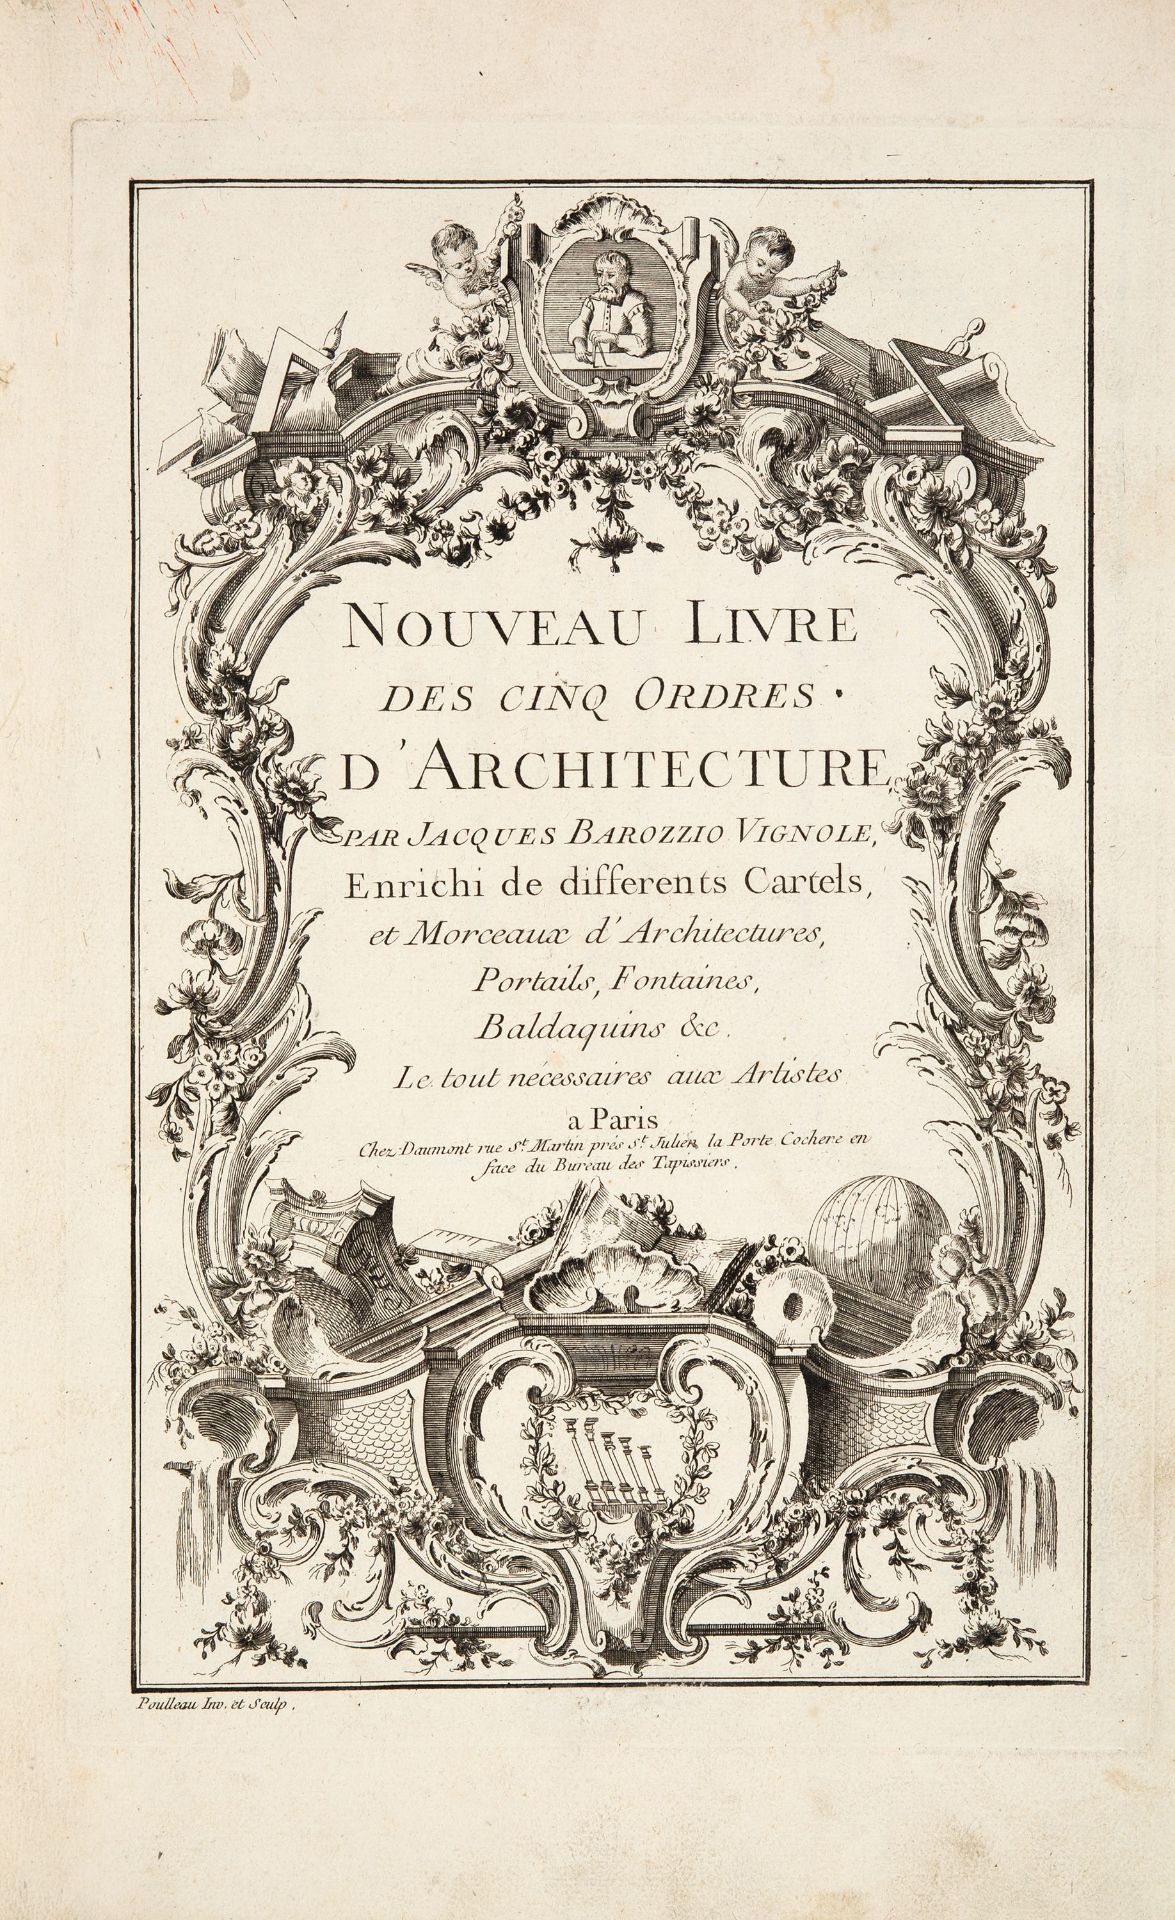 G. B. da Vignola, Nouveau livre des cinq ordres d'architecture. Paris 1780.